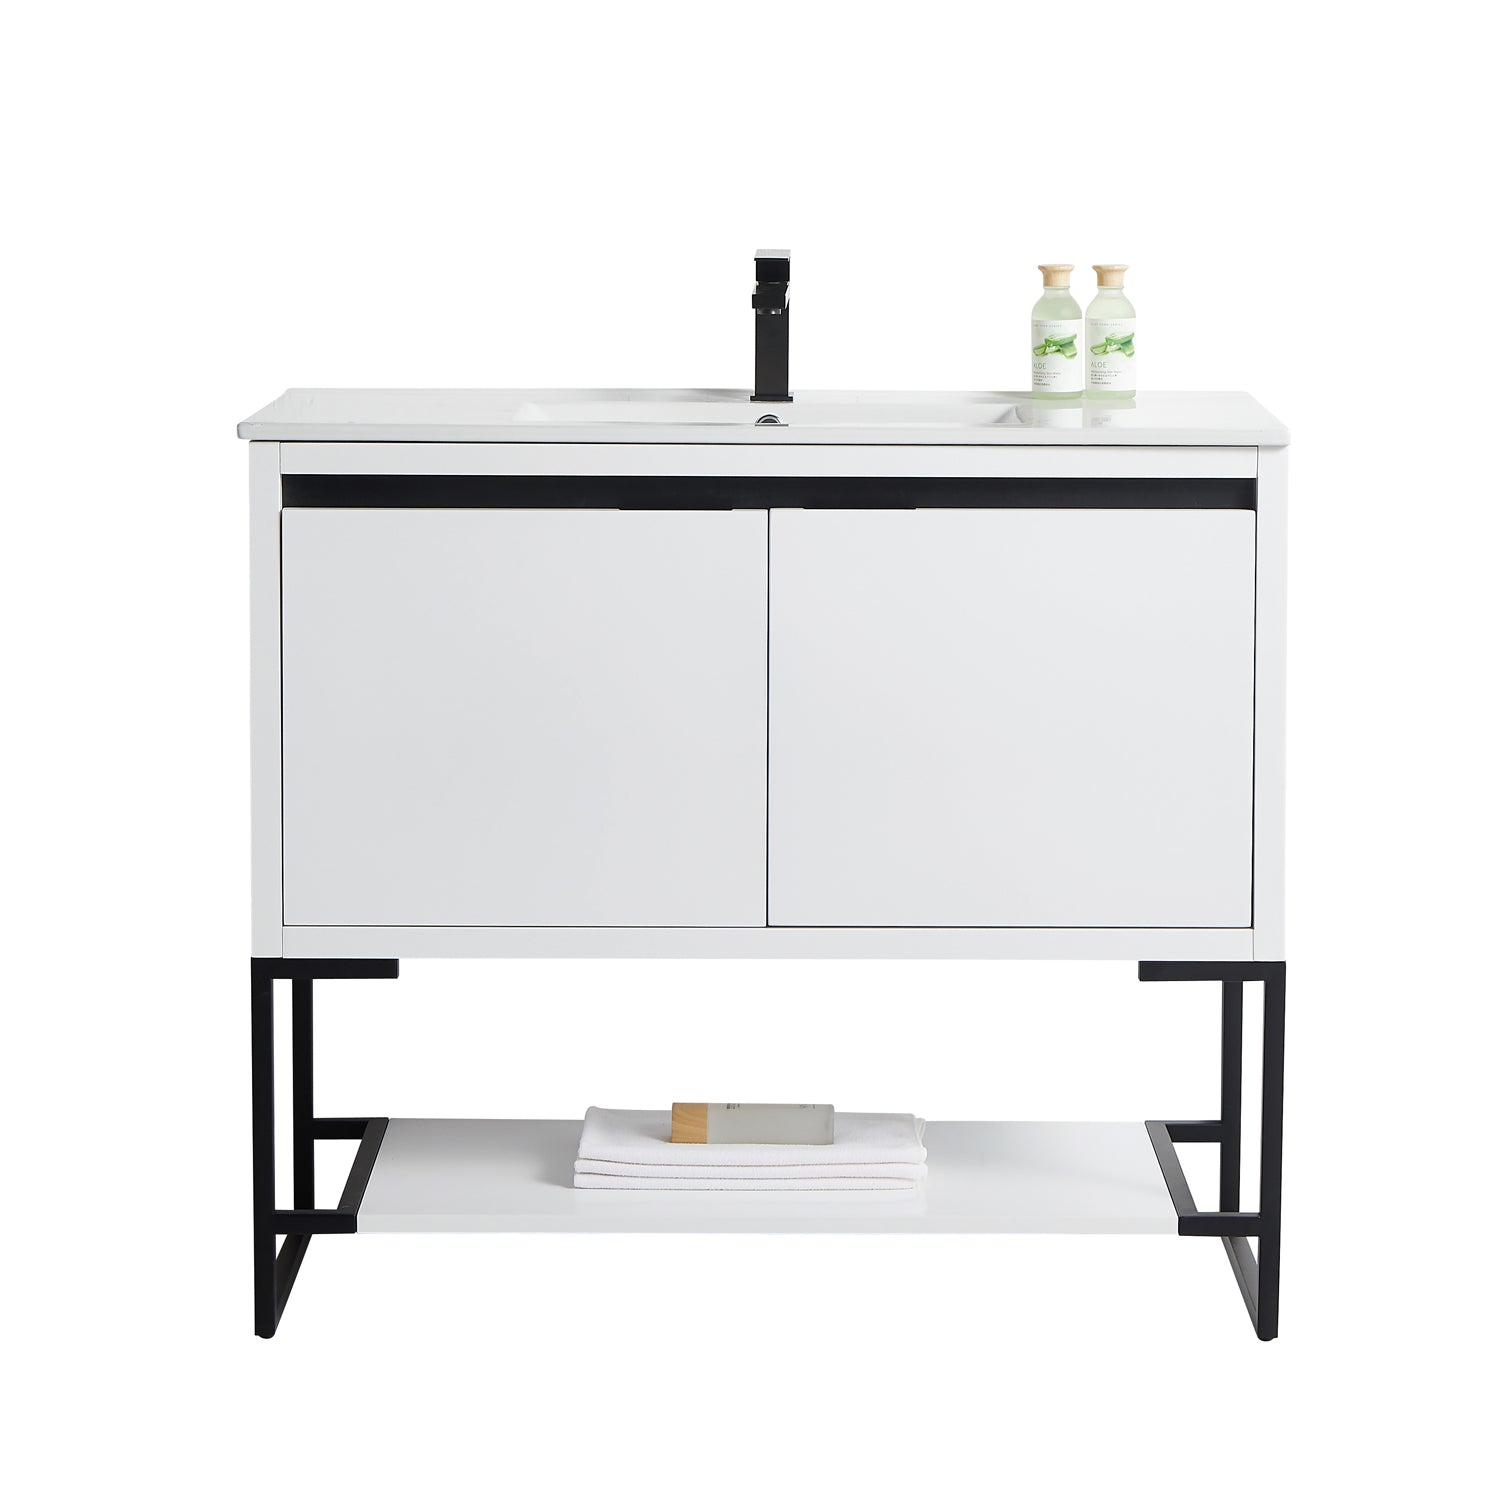 40 in. Freestanding Bathroom Vanity with Ceramics Counter Top Wood Cabinet in White Matt